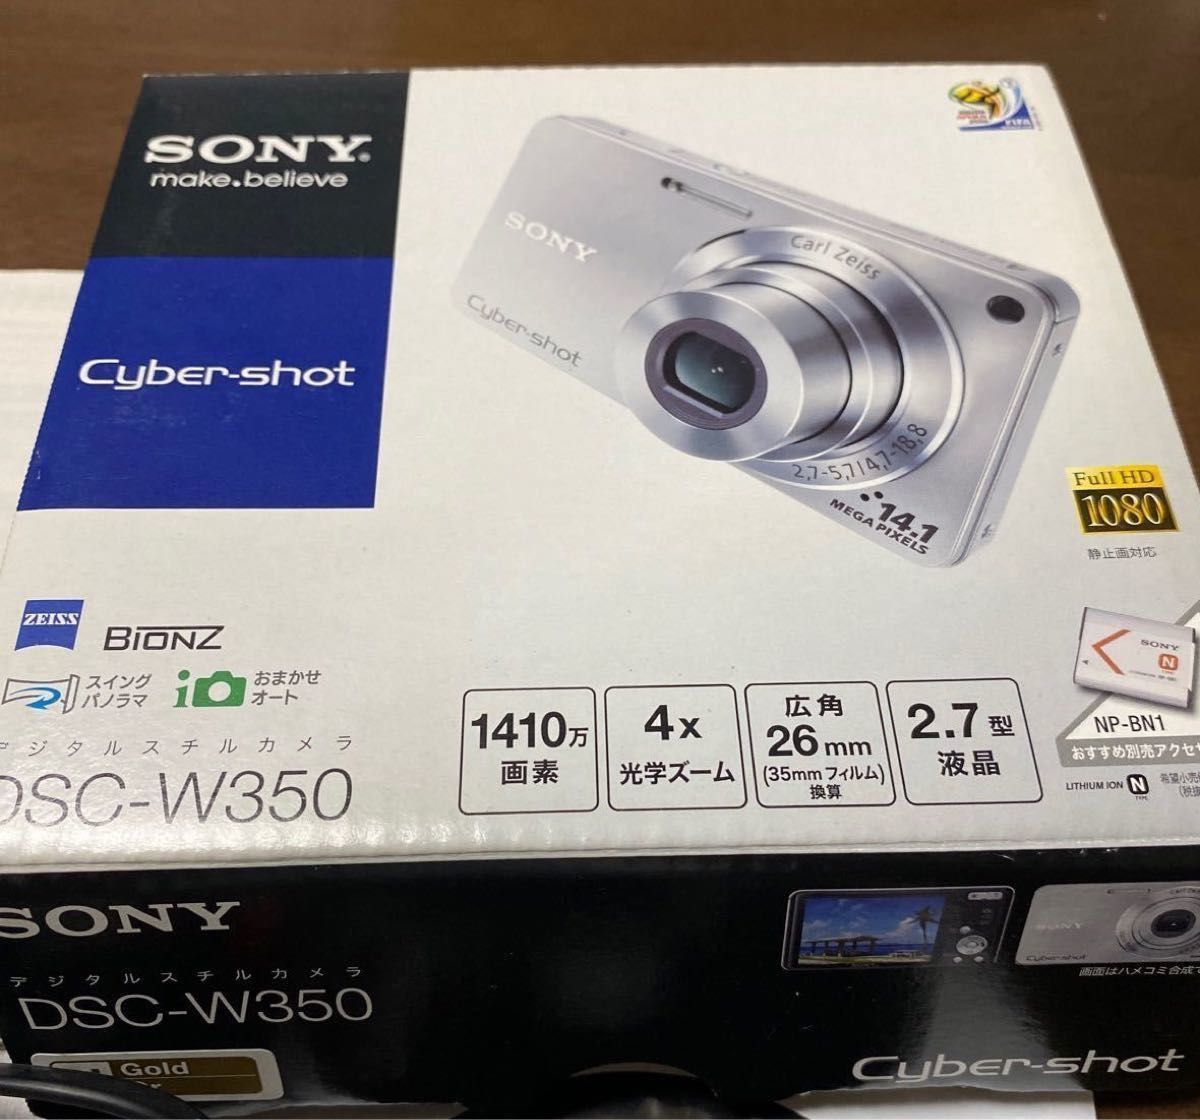 カメラ SONY SONY DSC-WX500 Cyber-shot デジタルカメラ コンパクトデジタルカメラ DSC-W350 Cyber-shot  ゴールド購入時フルセット+別売予備バッテリー&ロングストラップ付 デジタルカメラ